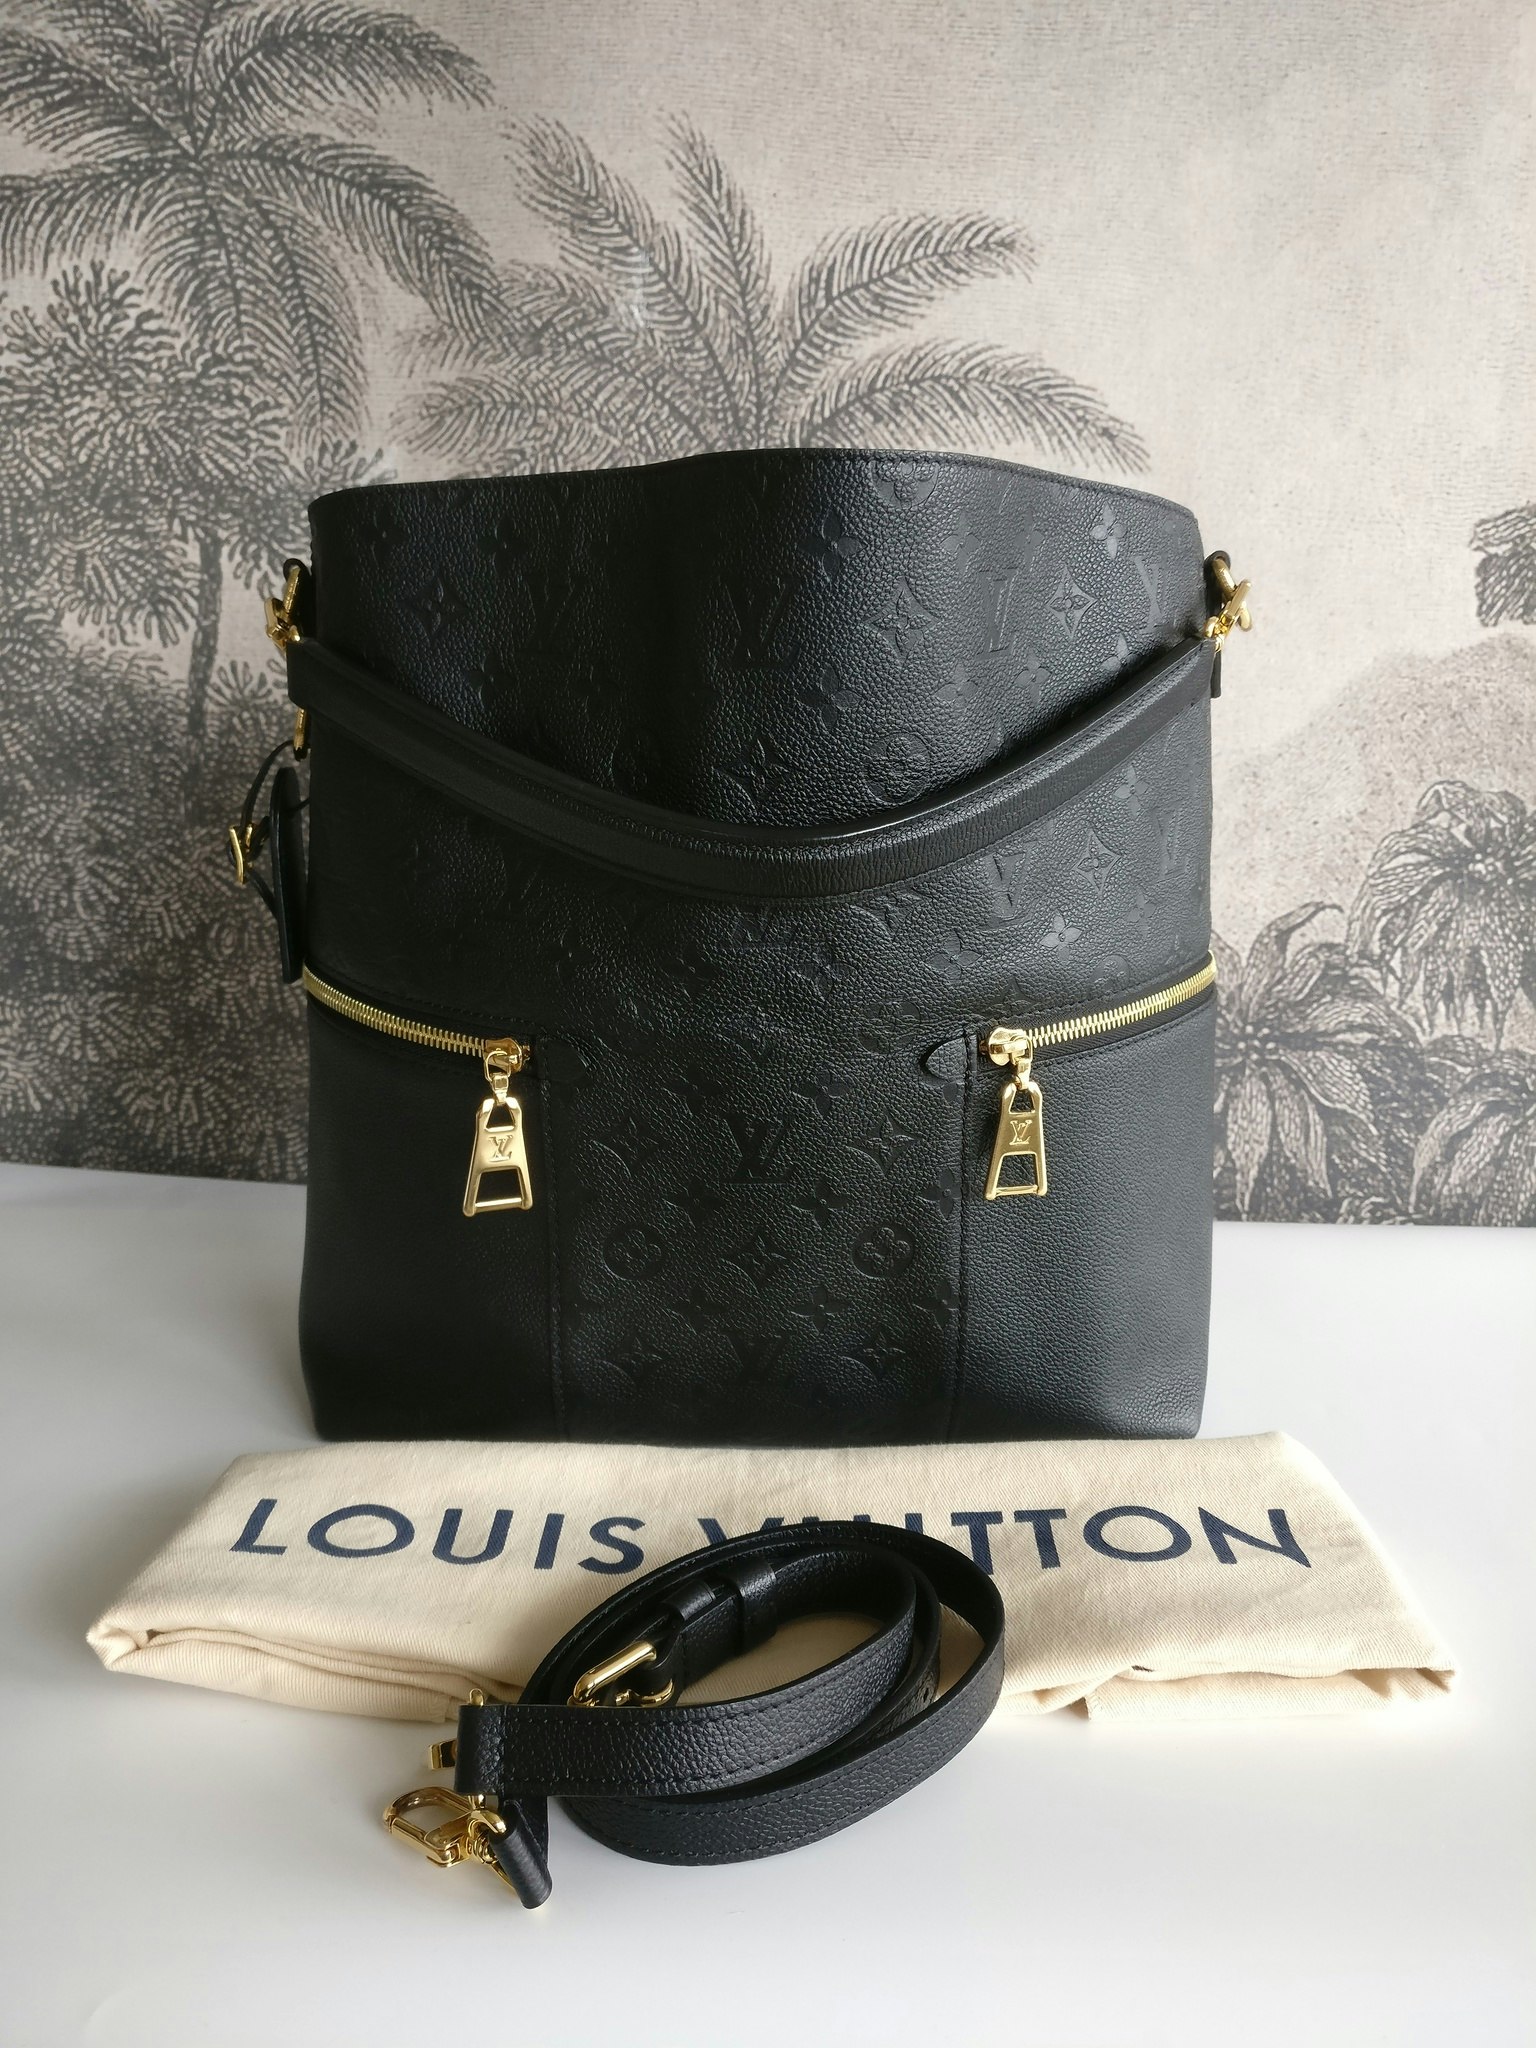 Louis Vuitton Empreinte Melie Black